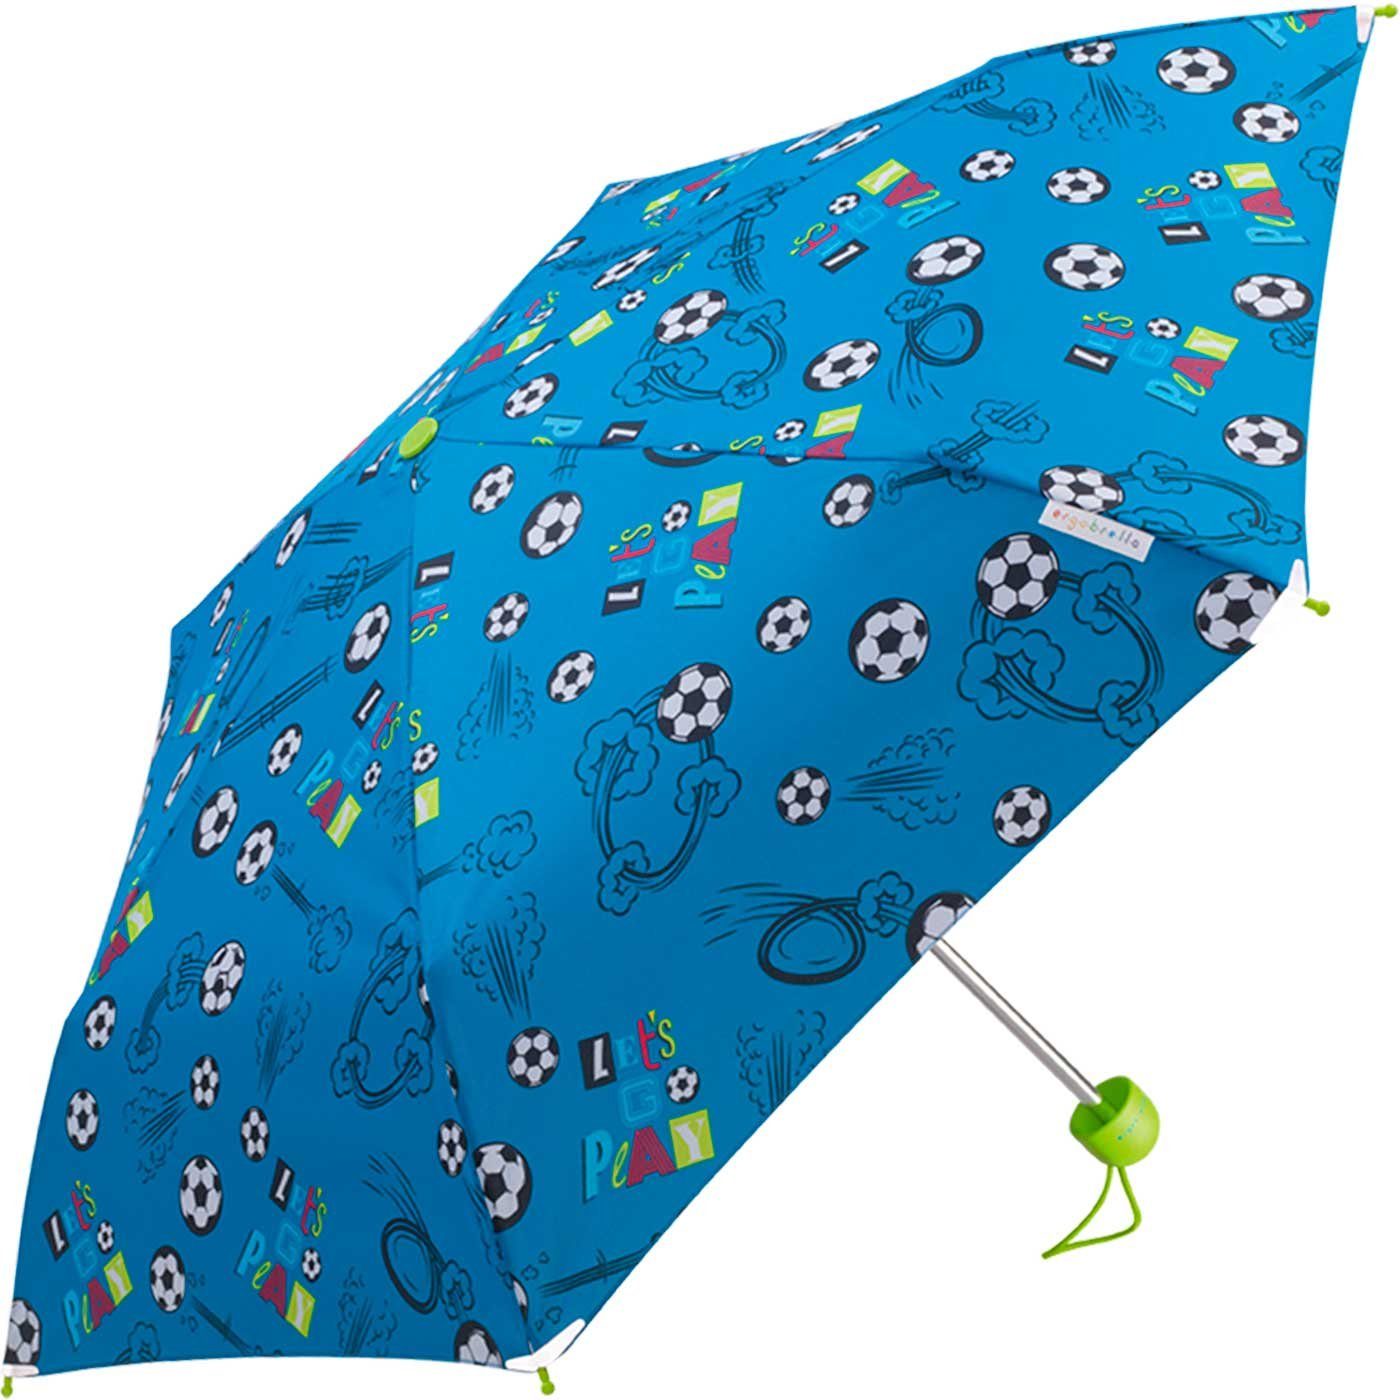 Kinderschirm RAIN und HAPPY reflektierend Basic Mini farbenfroh bedruckt, Taschenregenschirm fantasievoll